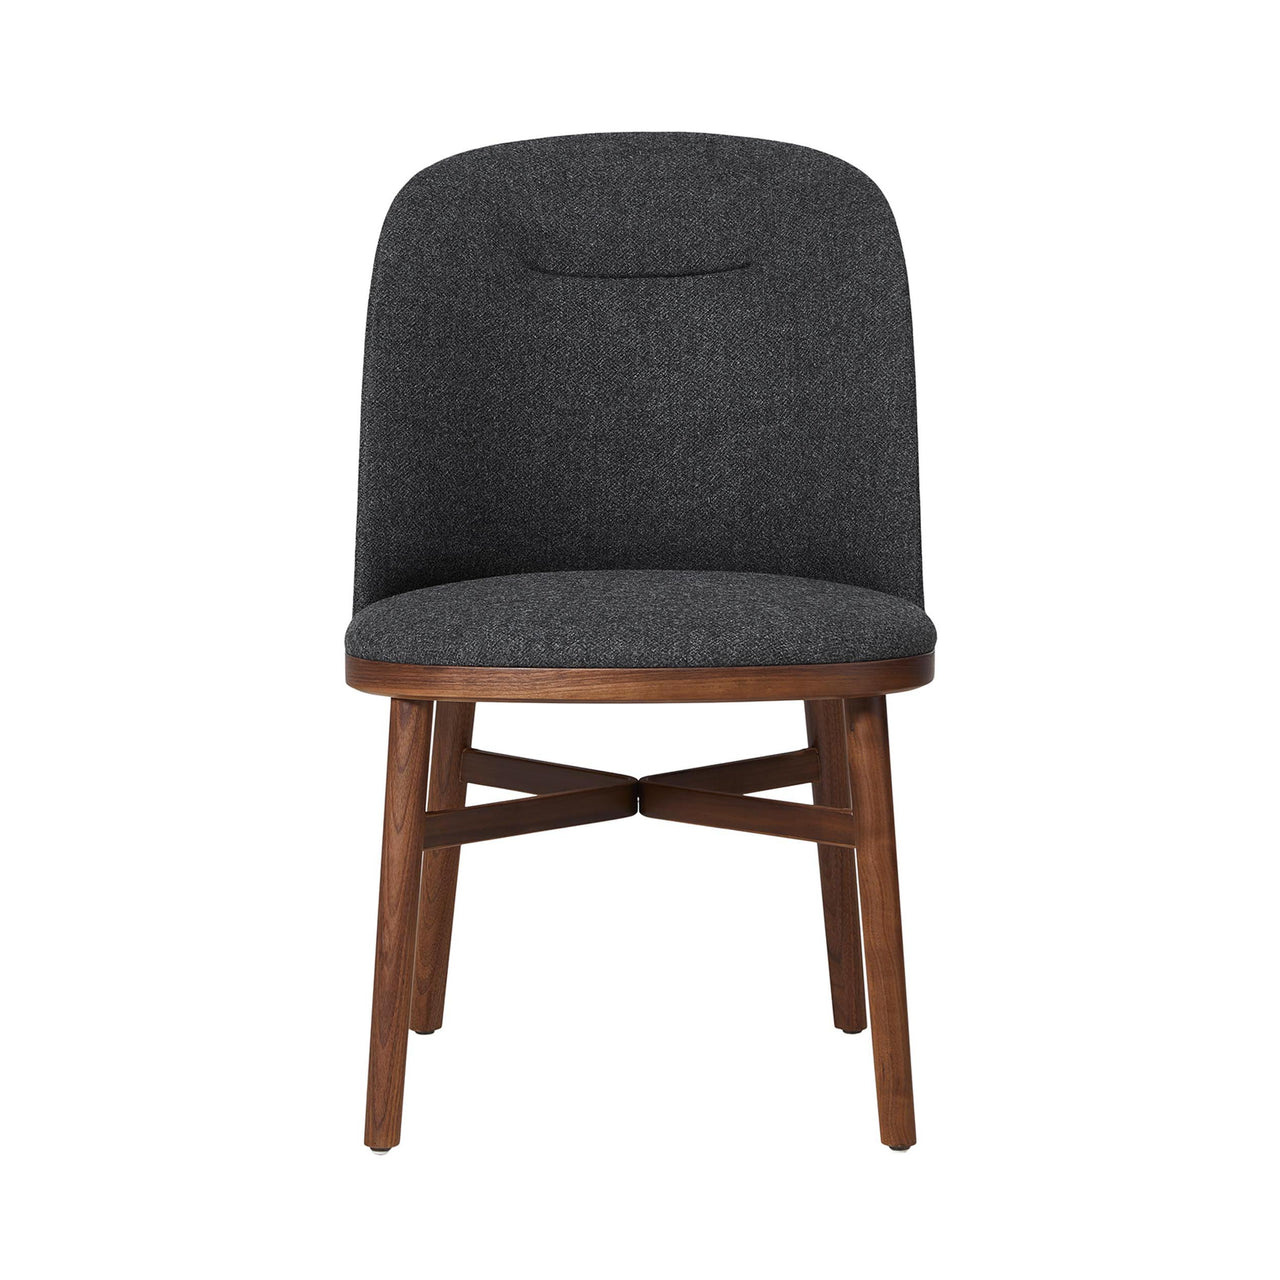 Bund Dining Chair: Natural Walnut